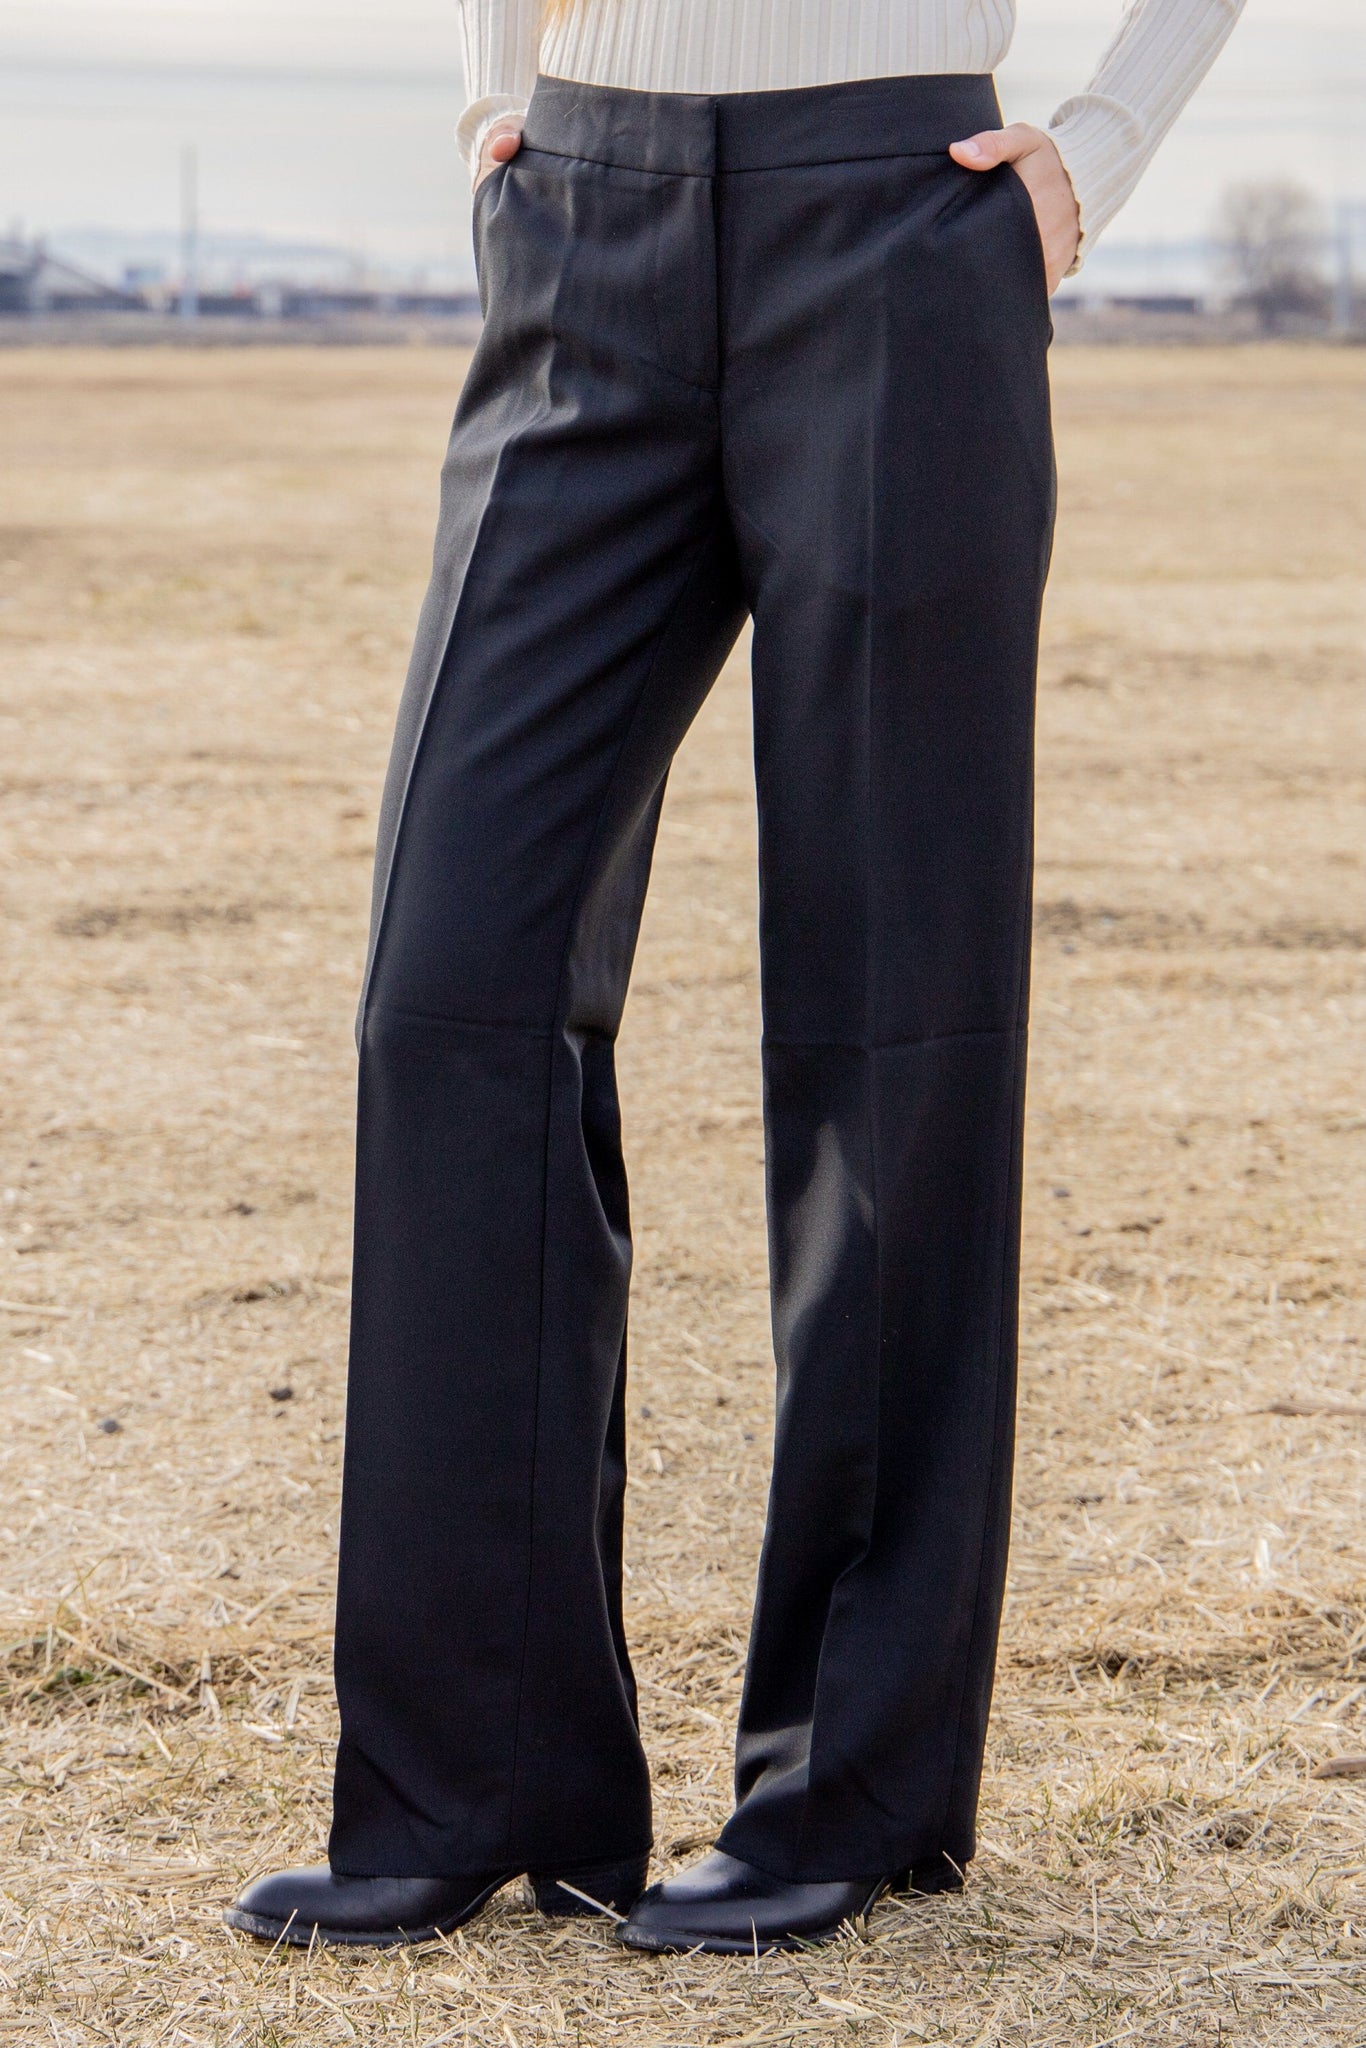 Express Wide Leg Super High Rise Tuxedo Dress Pants Black Women Size 0 3  Buttons | eBay